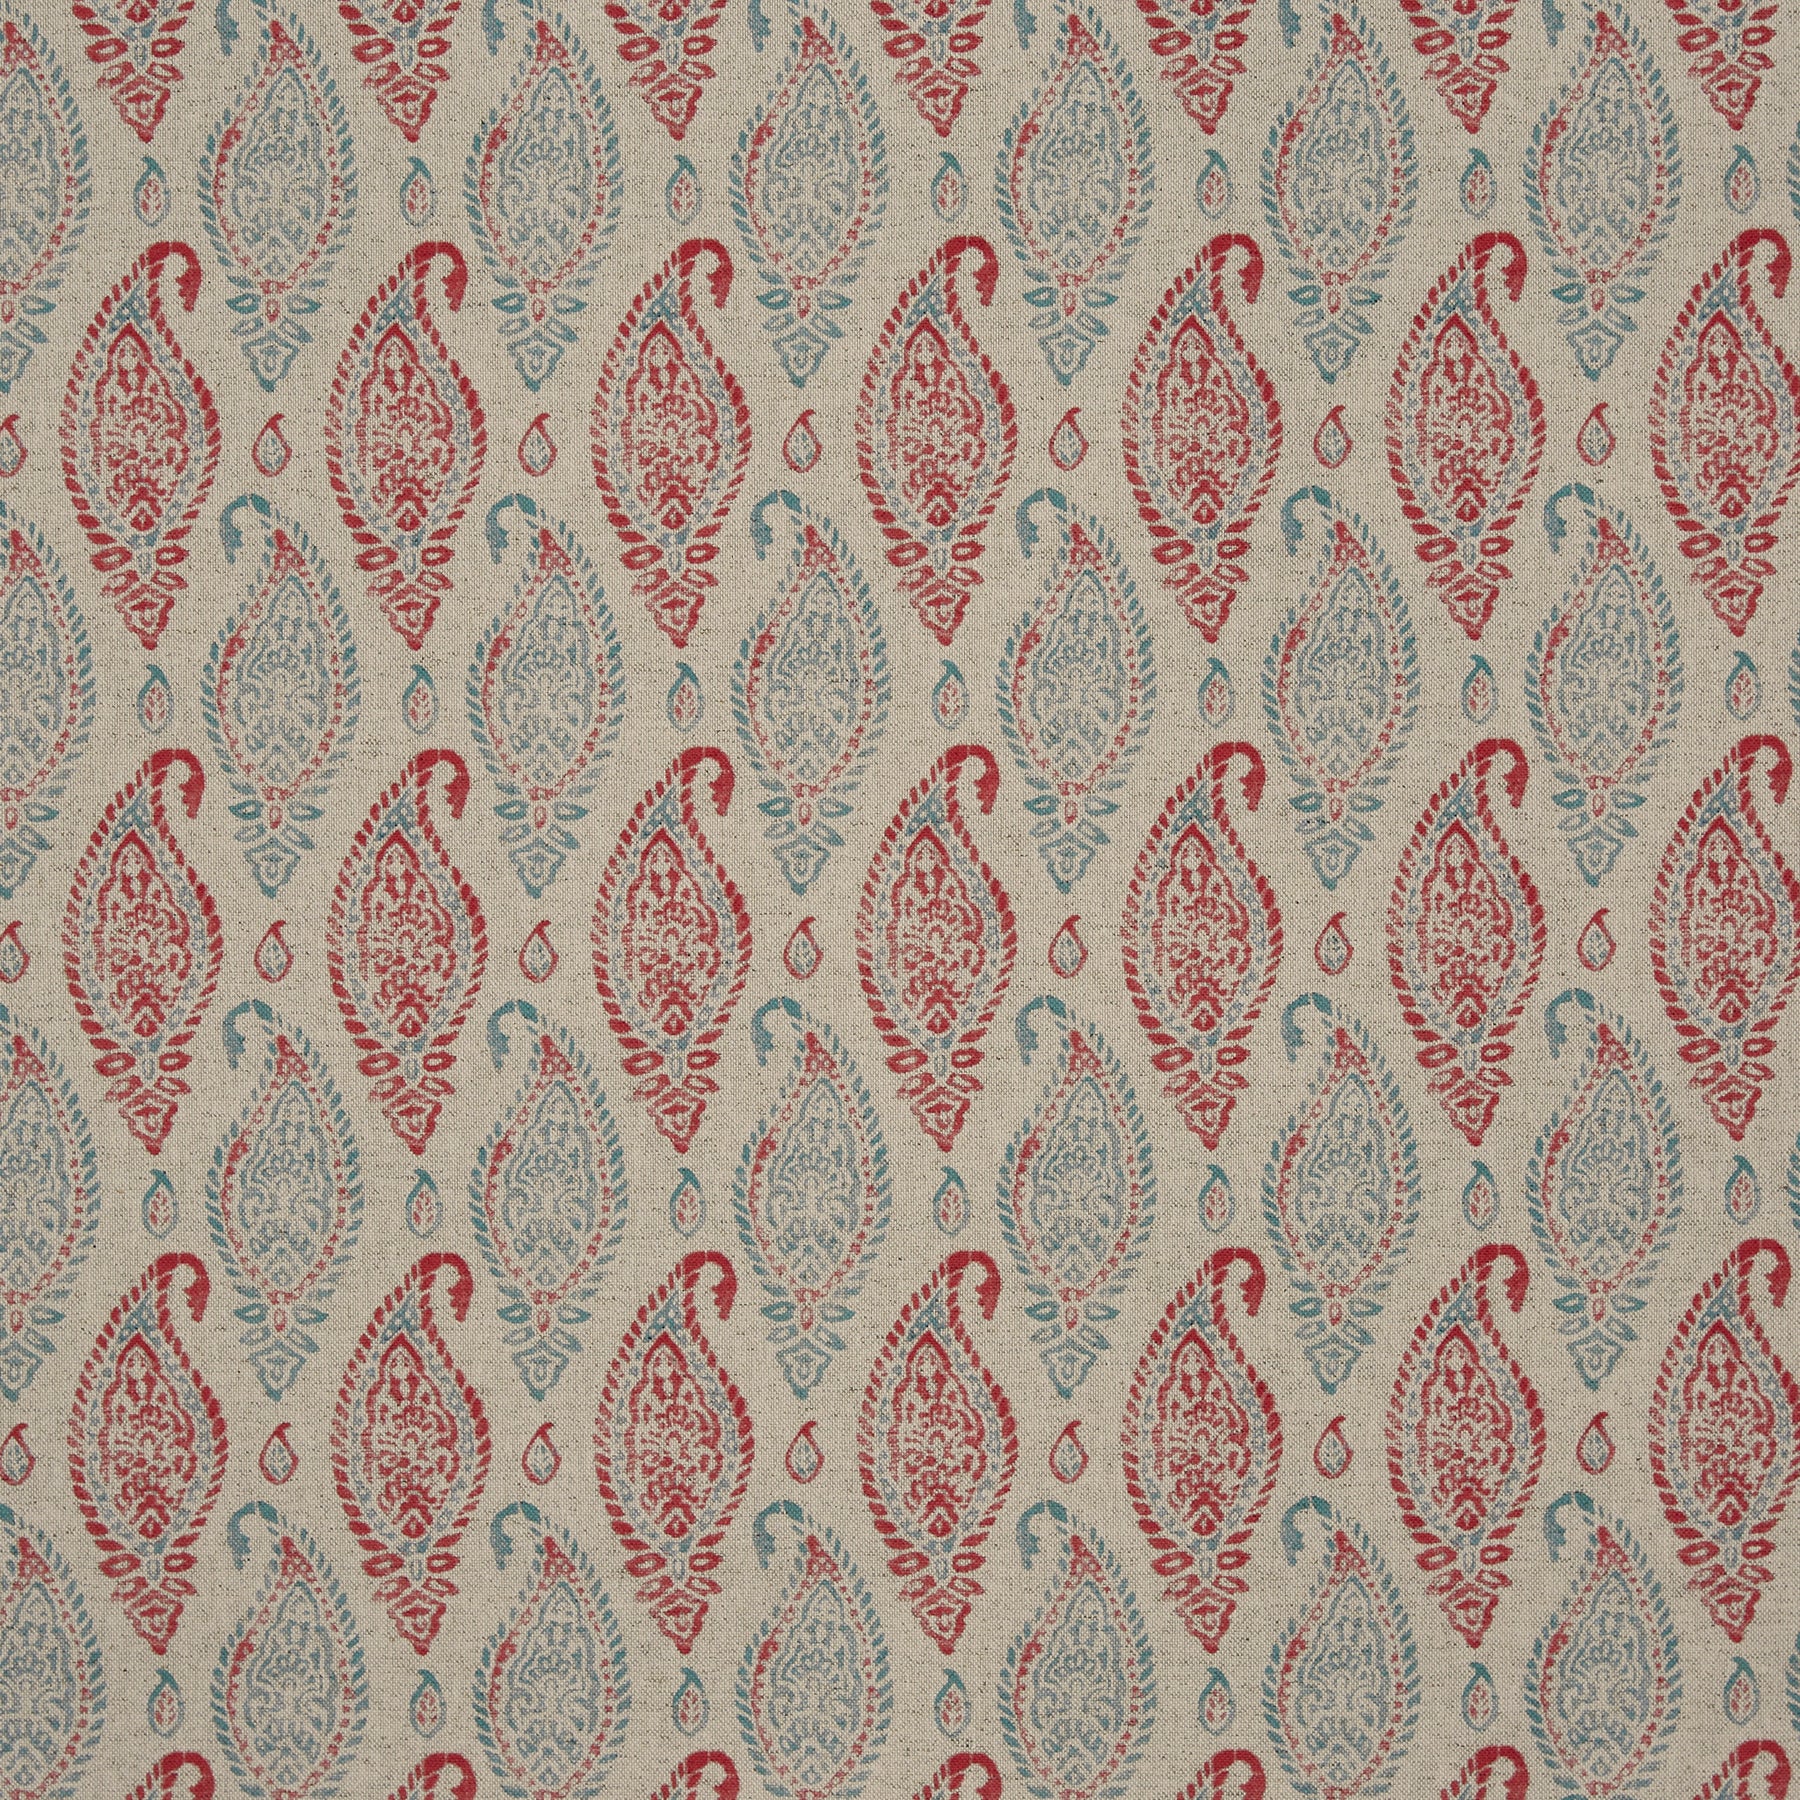 Prestigious Textiles Wollerton Fabric Poppy